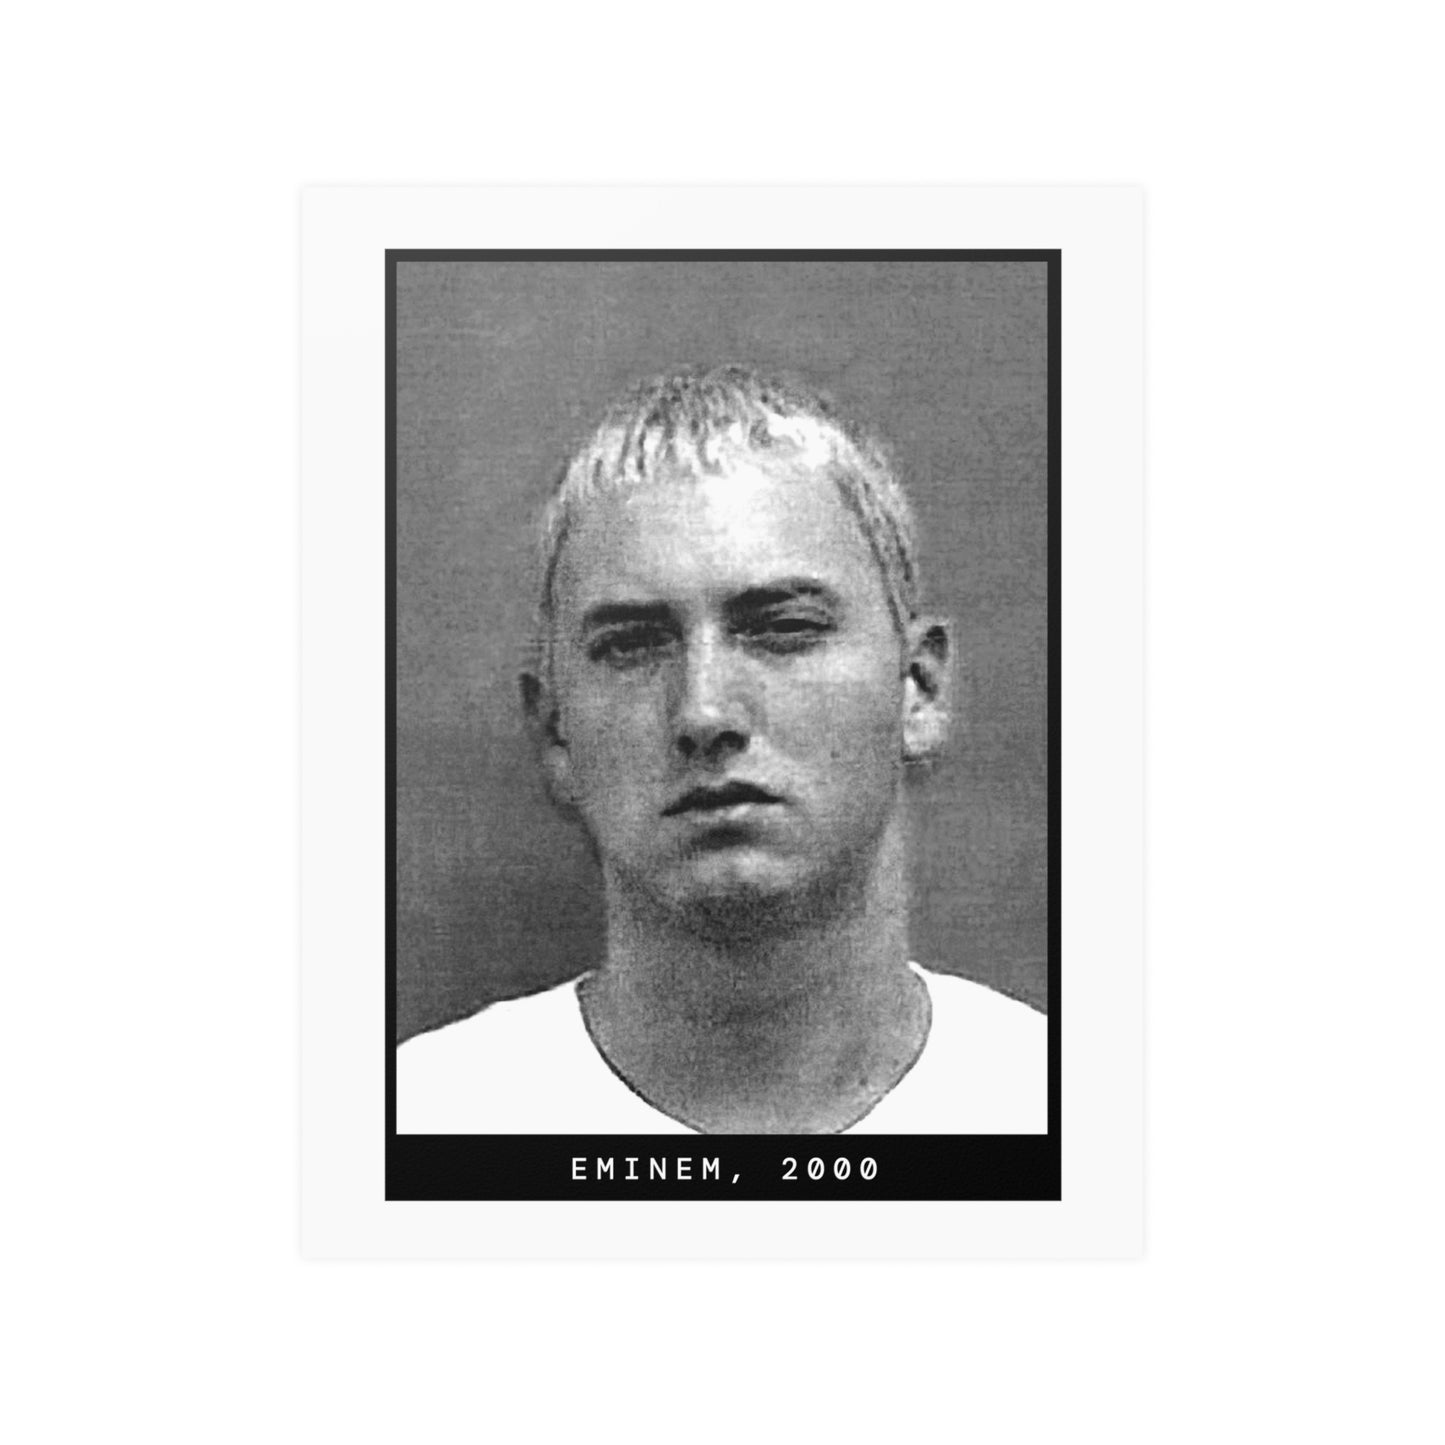 Eminem, 2000 Rapper Mugshot Poster